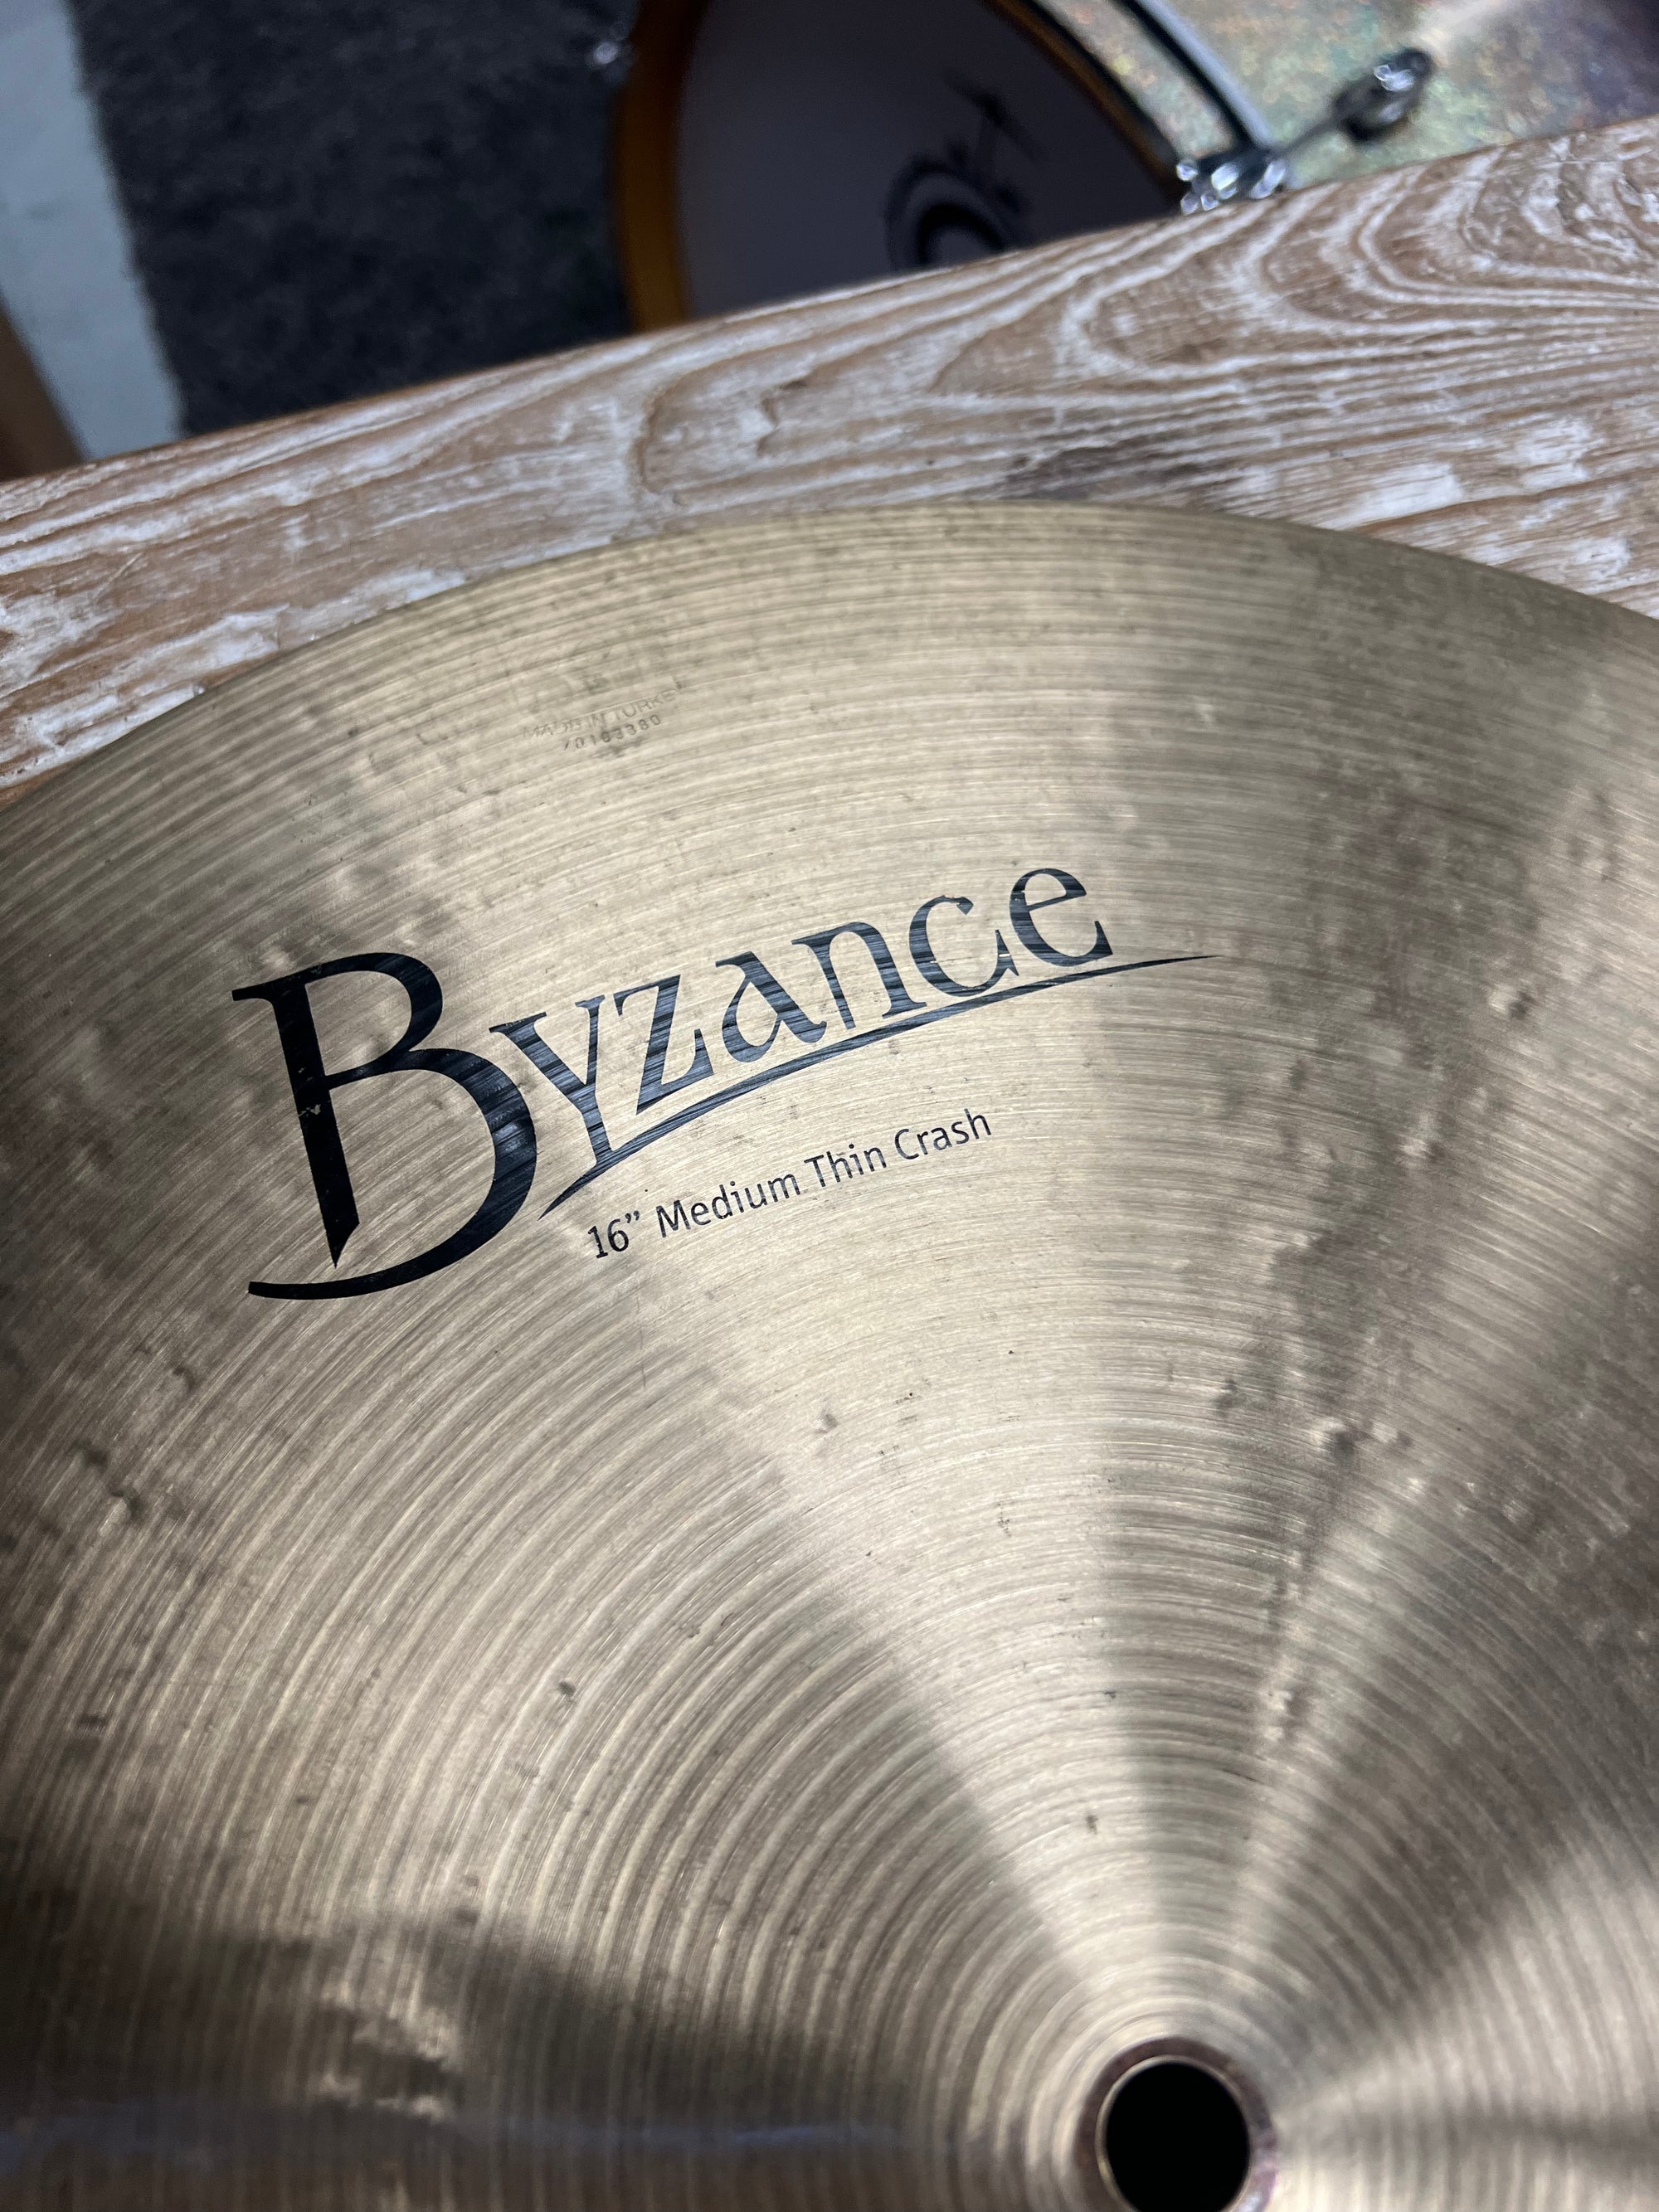 Meinl 16” Byzance Medium thin Crash Cymbal